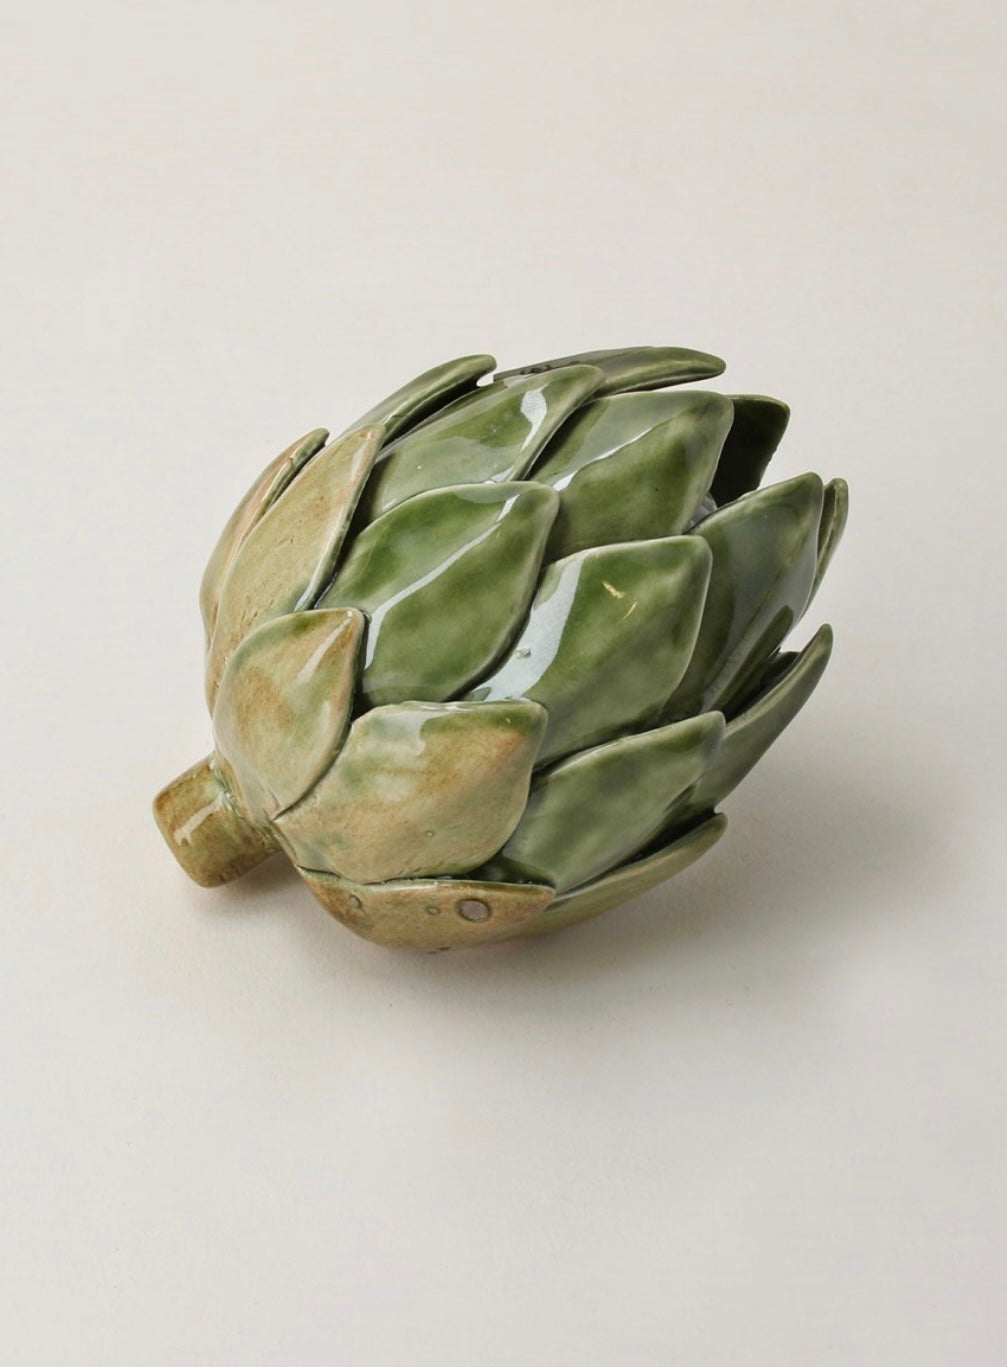 Ceramic Artichoke